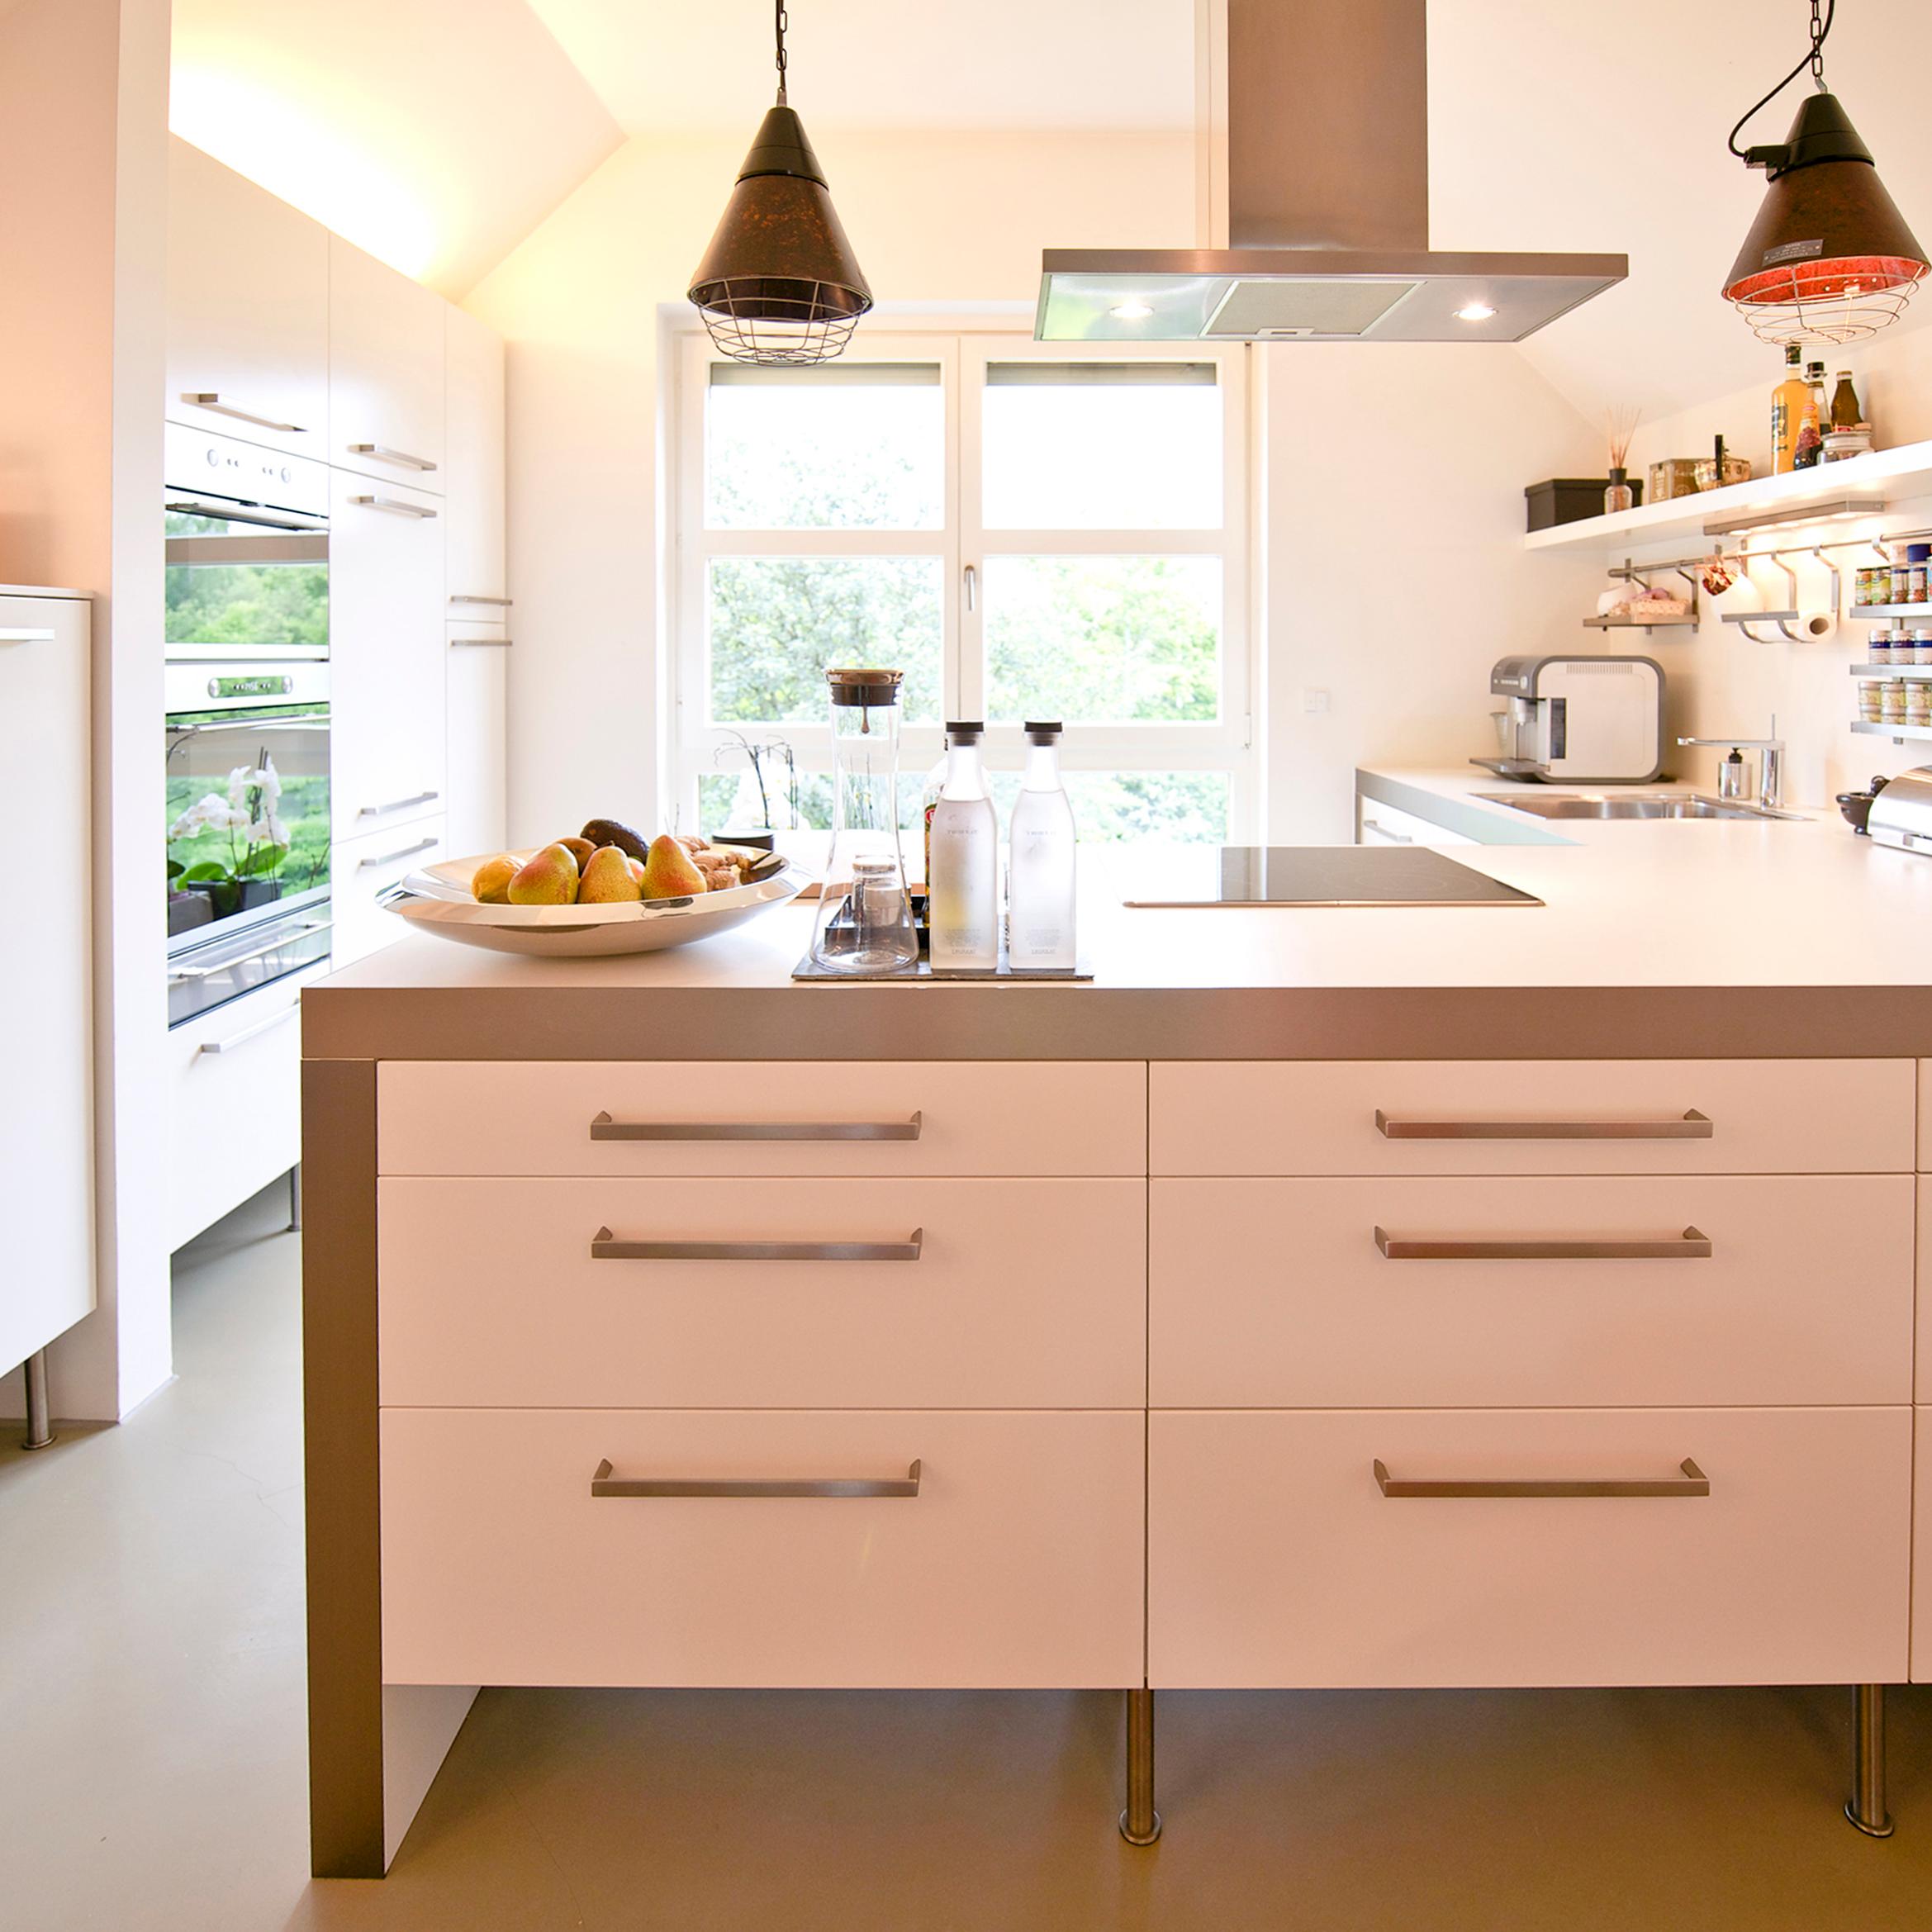 Offene Küche in weiß #betonboden #küche #loft #stauraum ©Zolaproduction